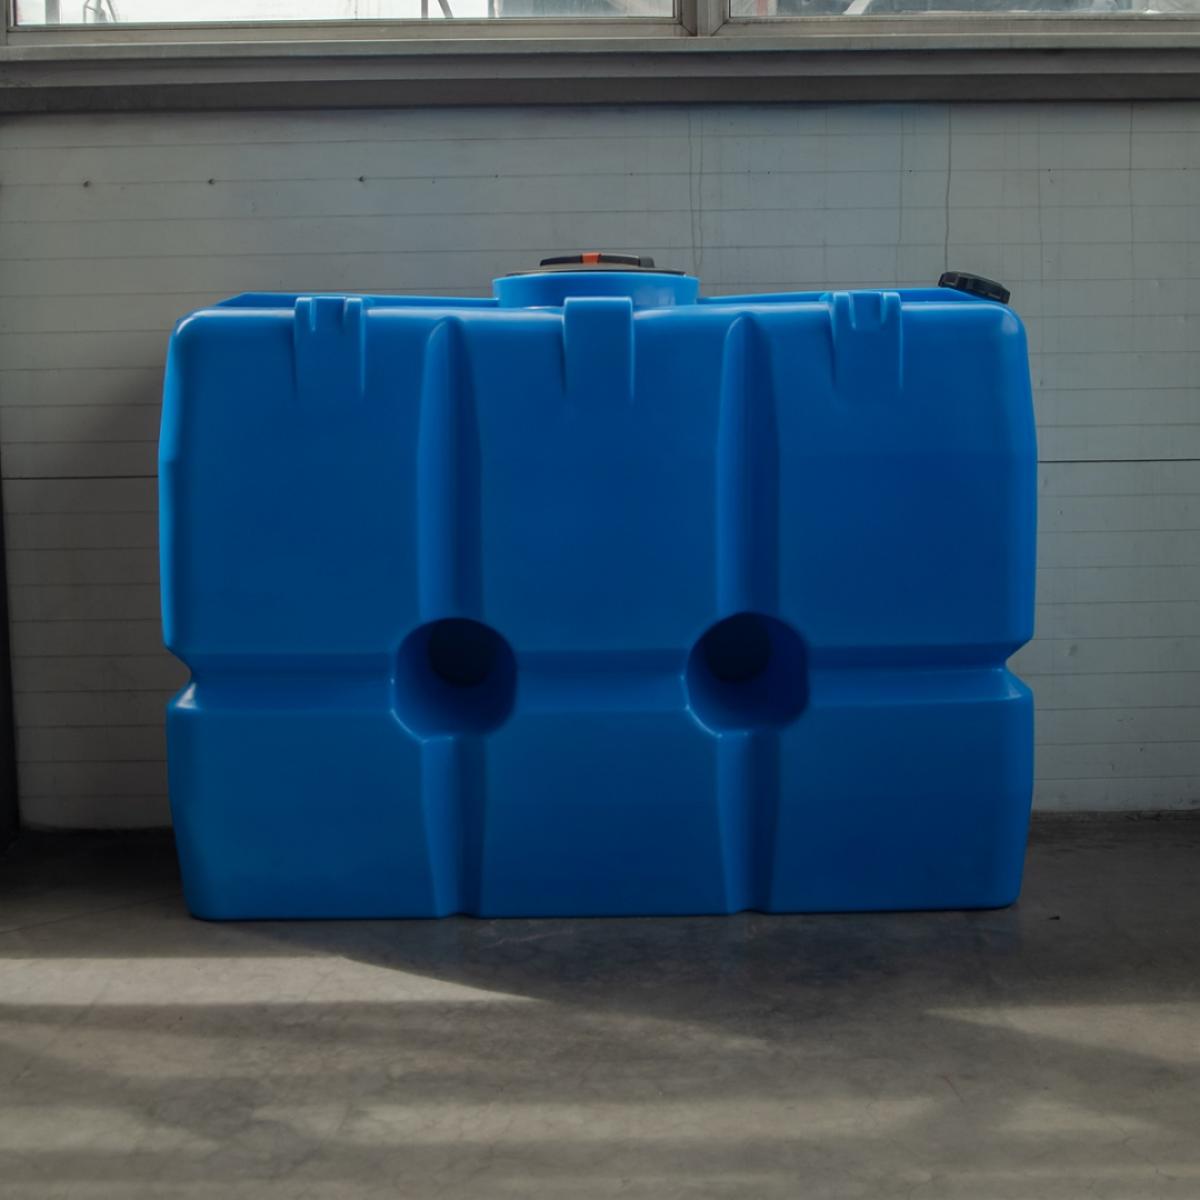 Емкость SK 2000л (красный) для питьевой воды и продуктов с плотностью до 1,0 г/см³ (имеет эргономичную прямоугольную форму и компактные размеры)